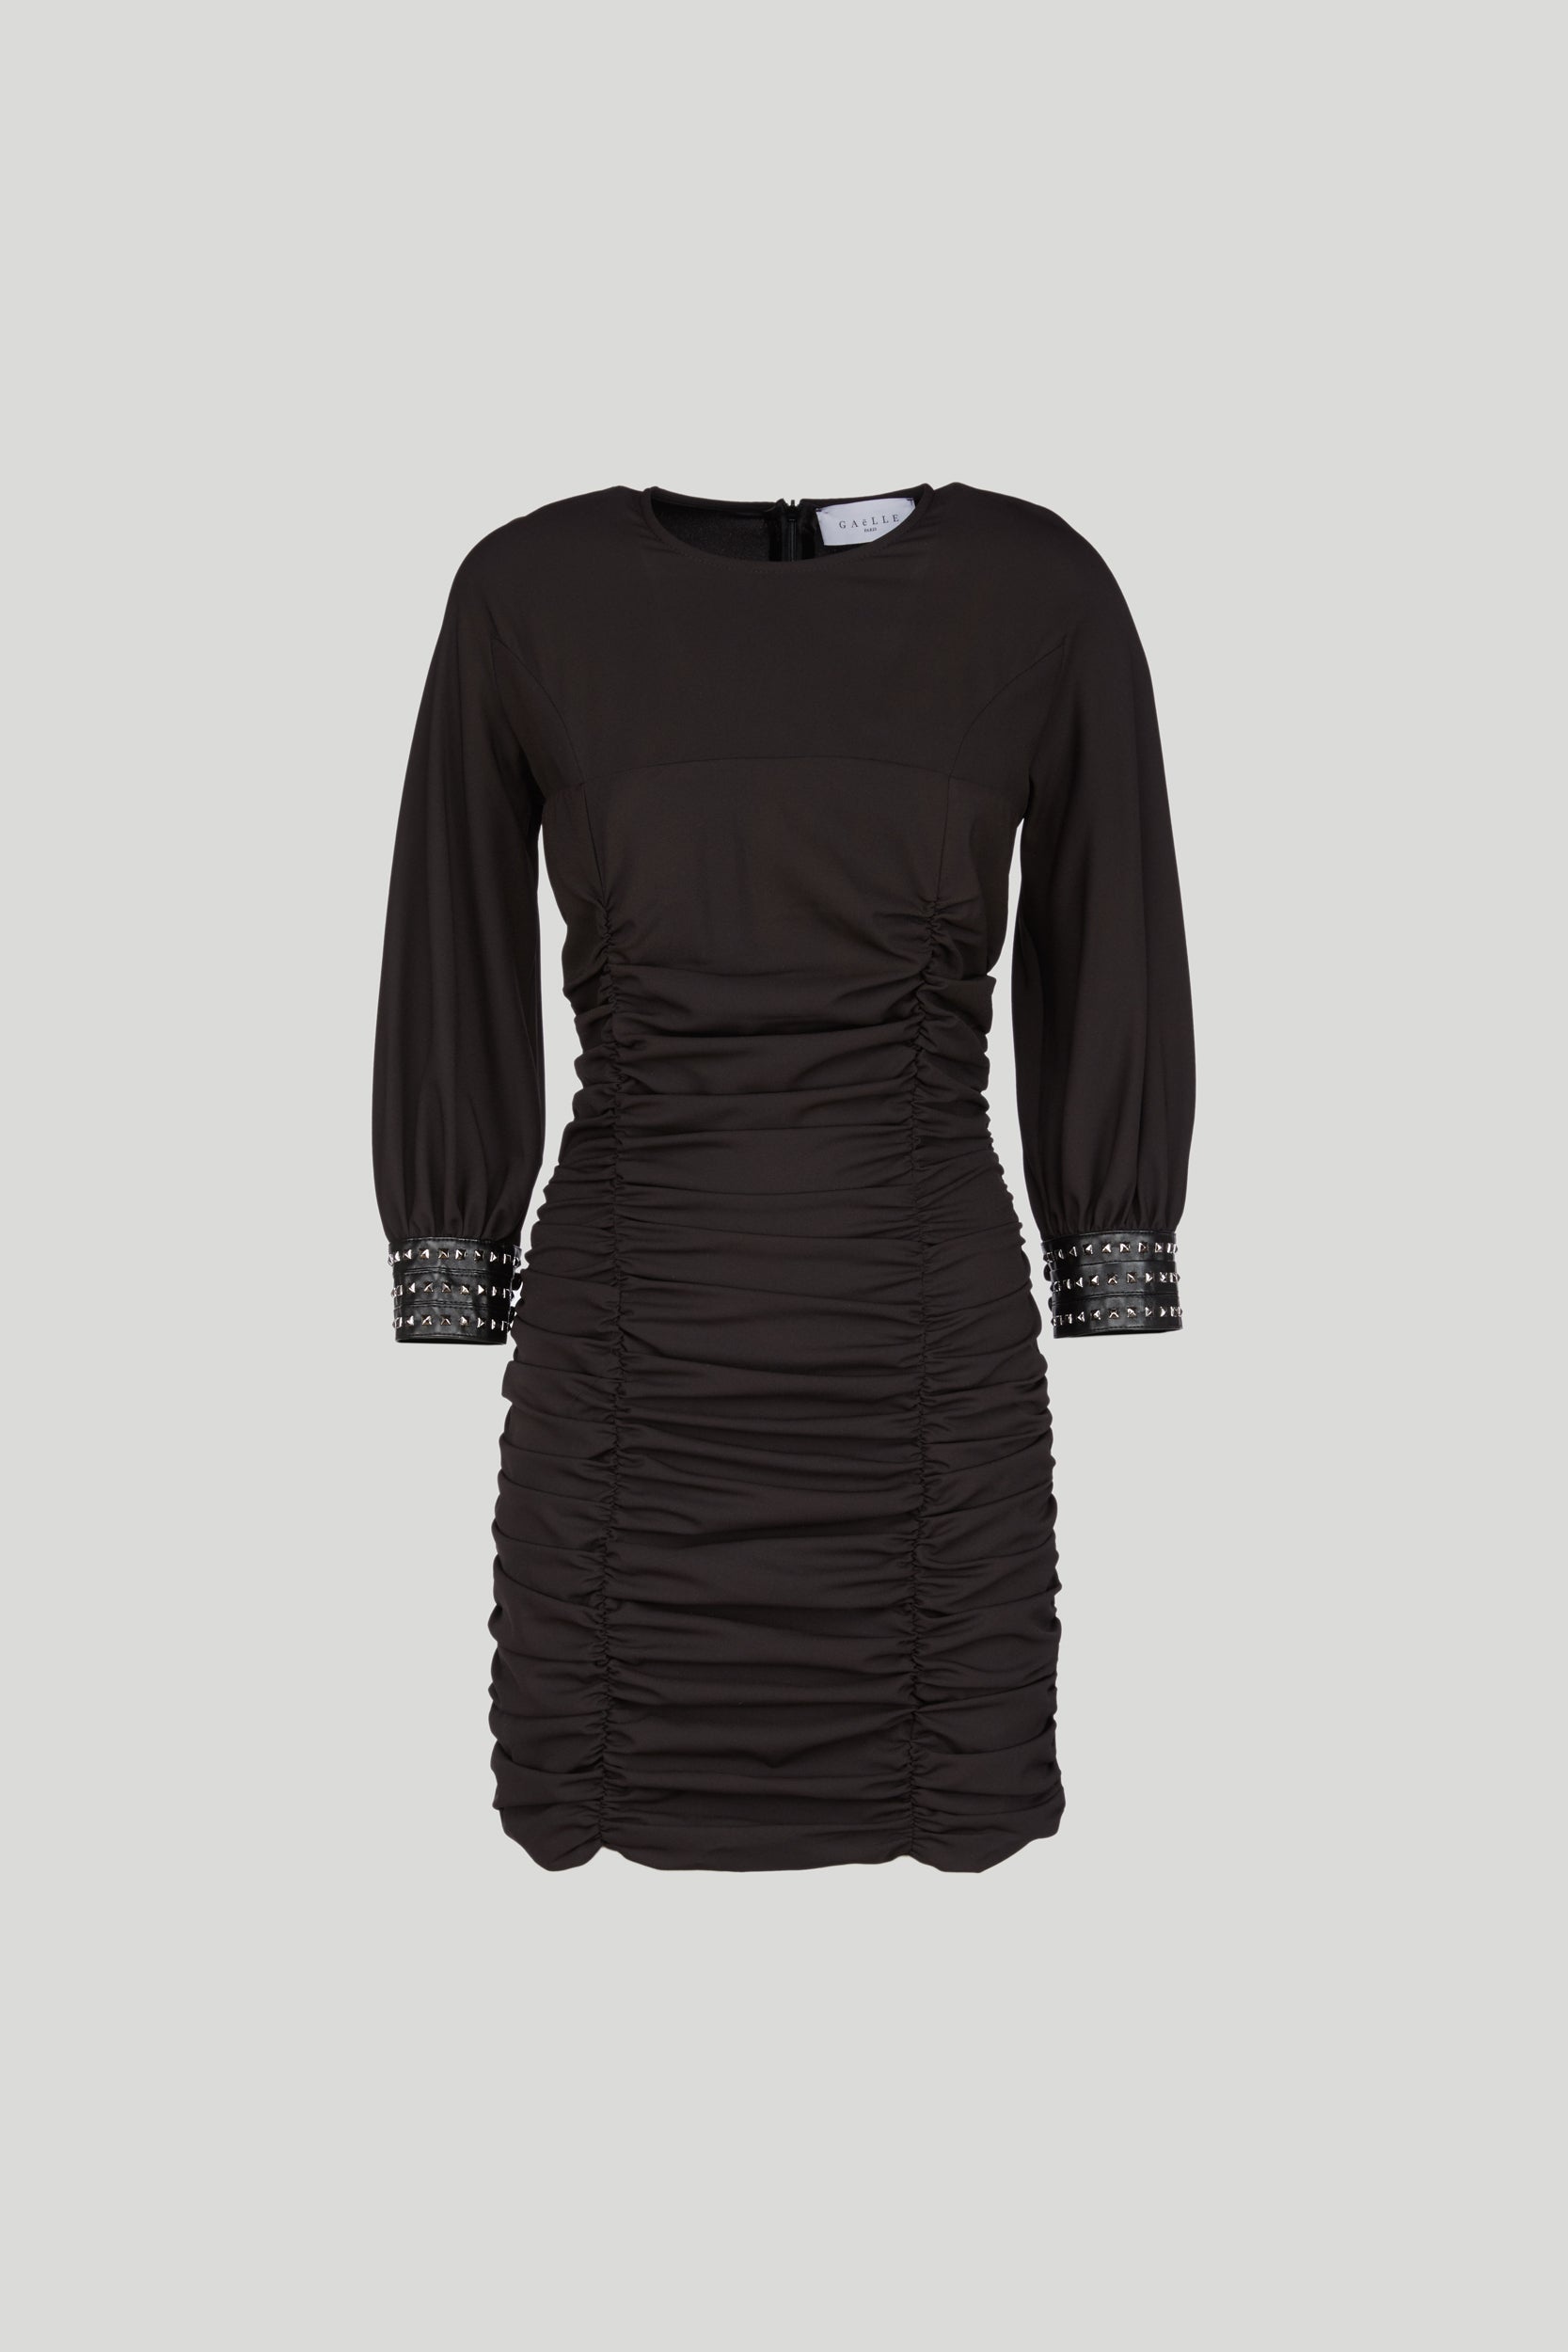 GAELLE Short Black Dress